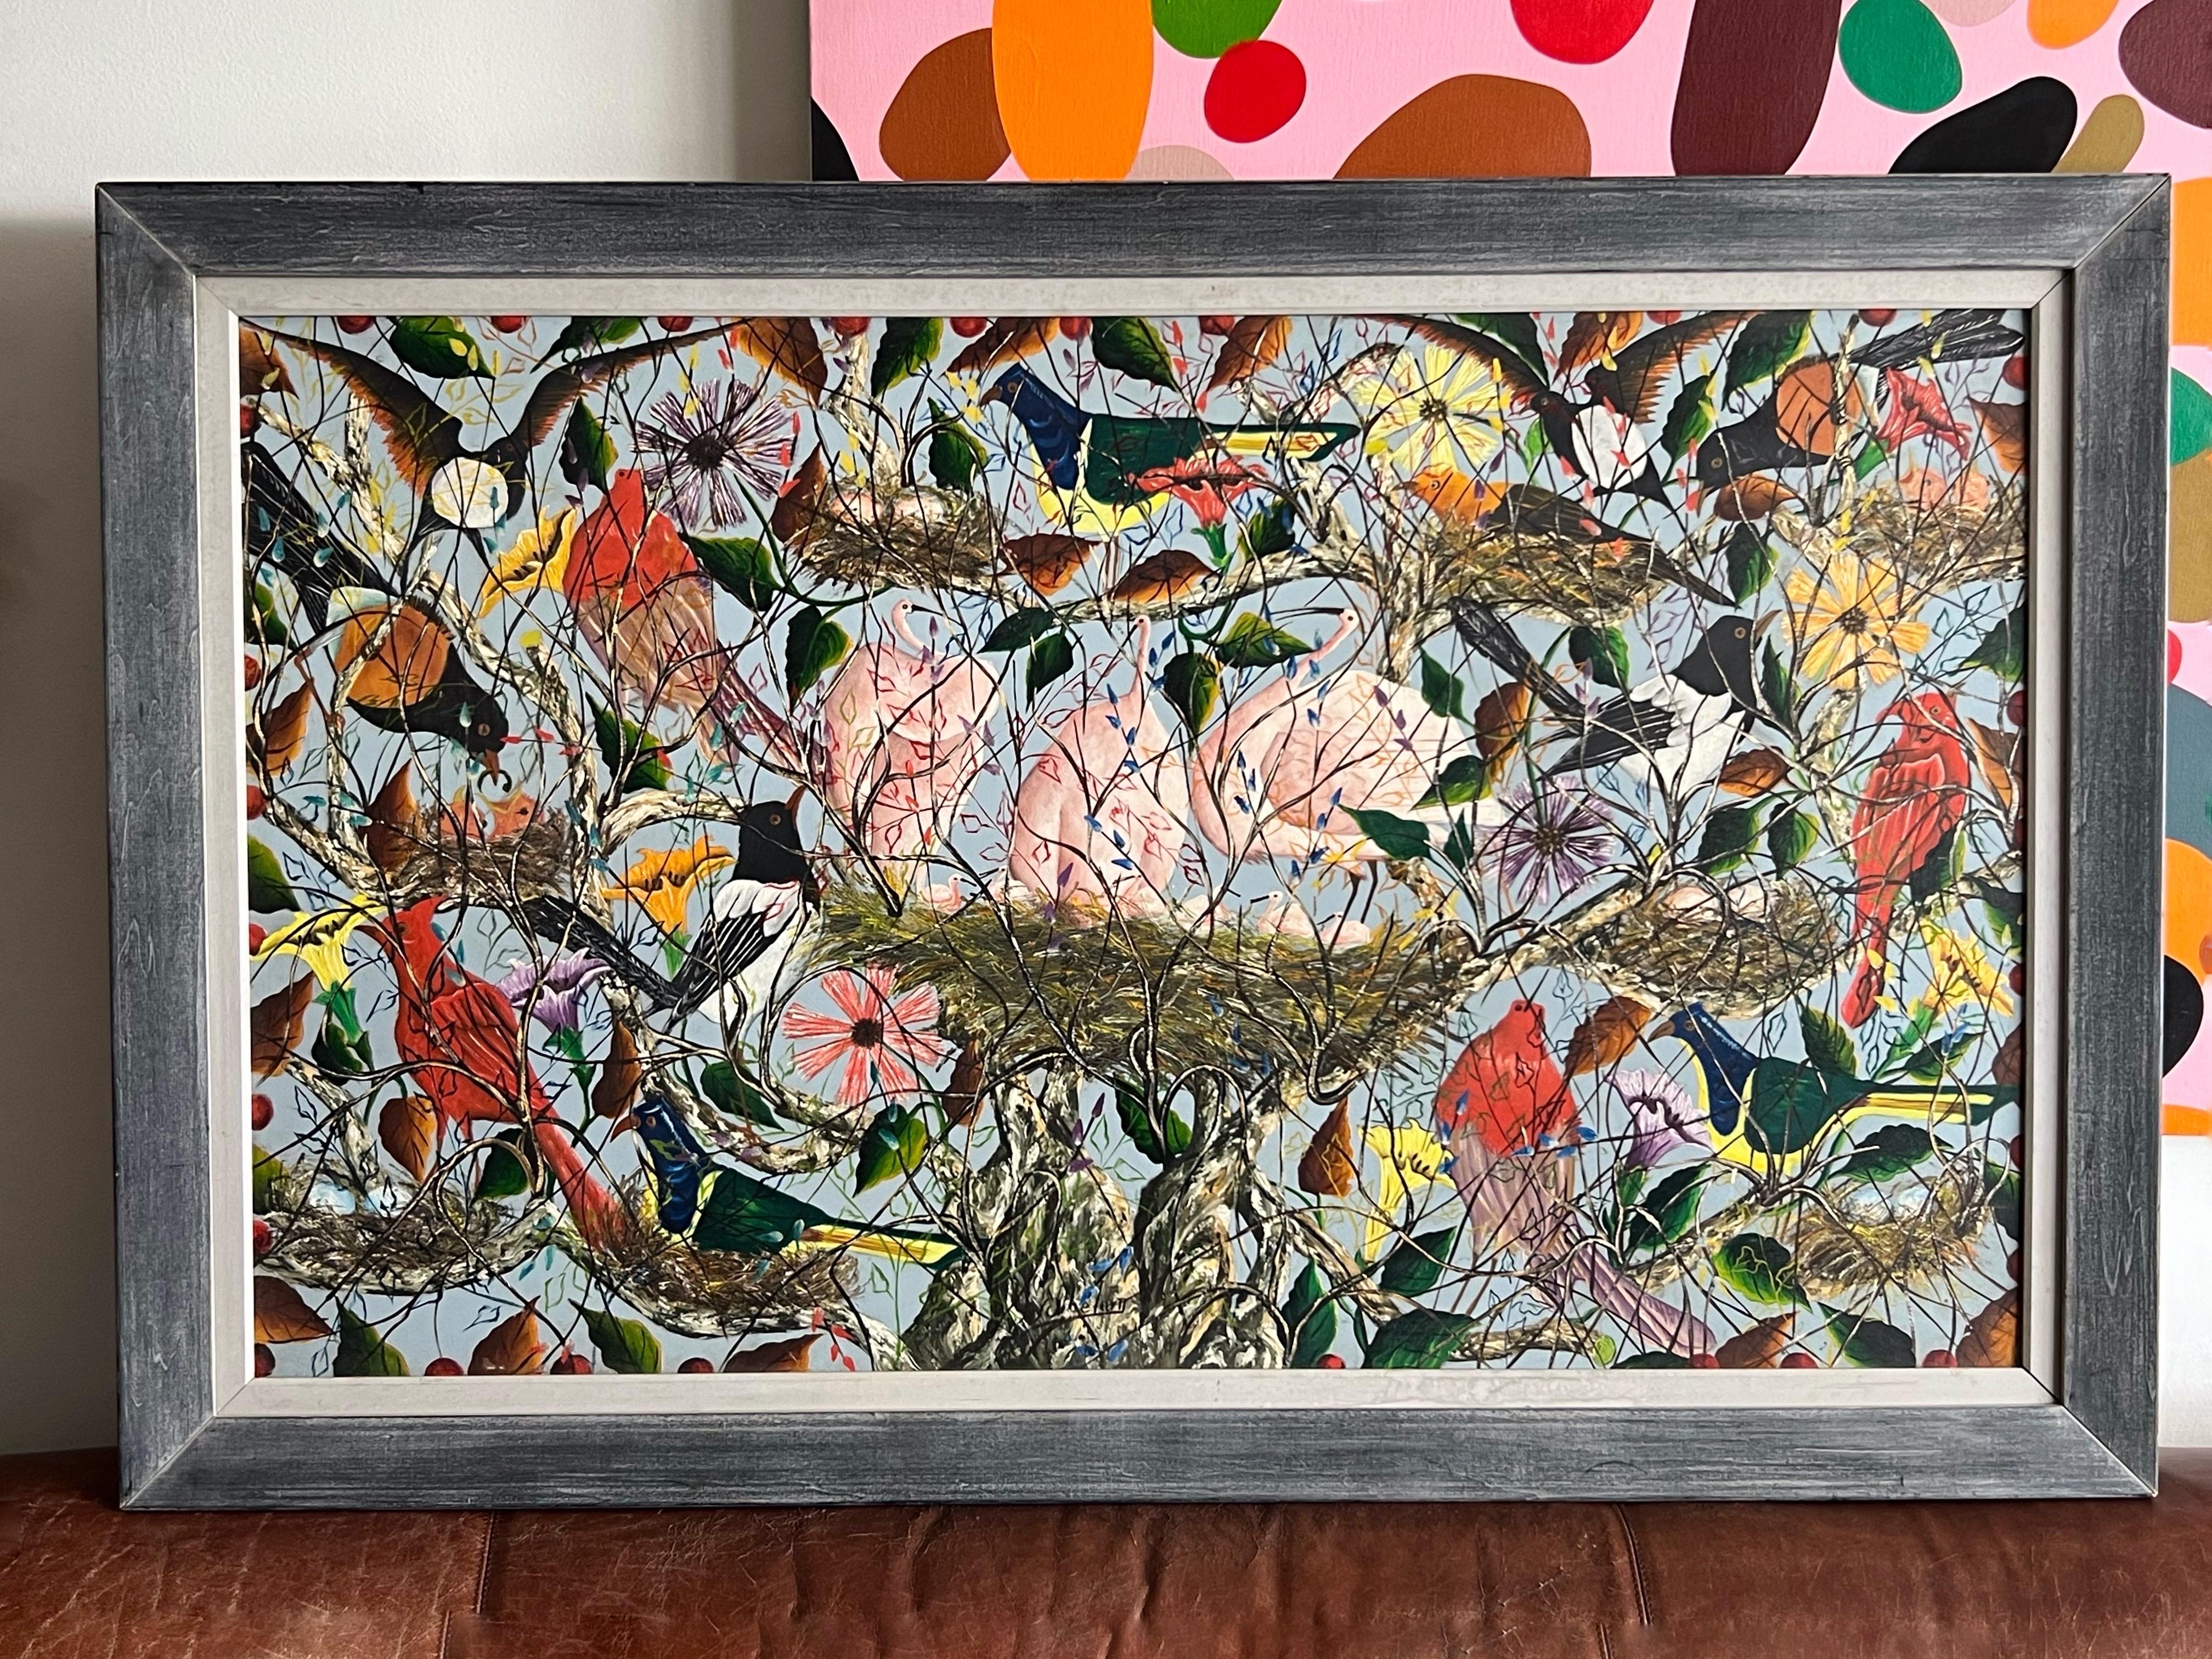 Spektakuläres Öl auf Karton mit mehreren Vögeln und vielen Blumen. Ein großformatiges Gemälde. Im modernen, naiven haitianischen Stil. 